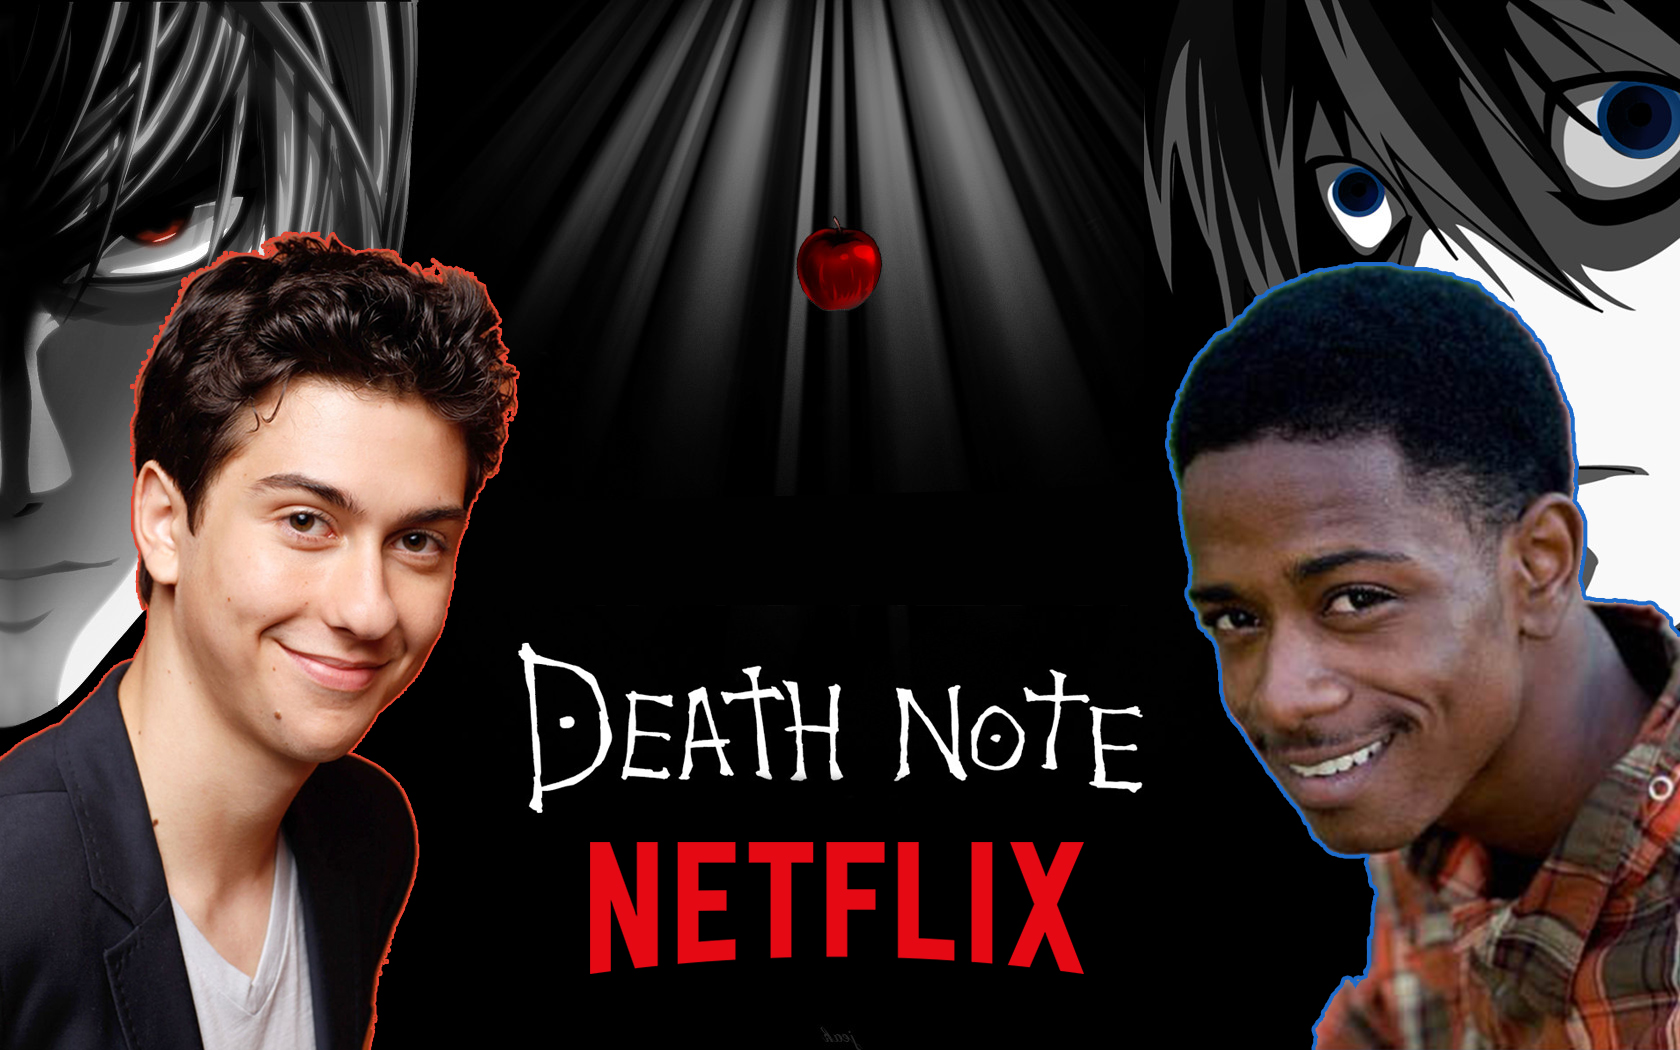 Death Note na Netflix, o que podemos esperar?